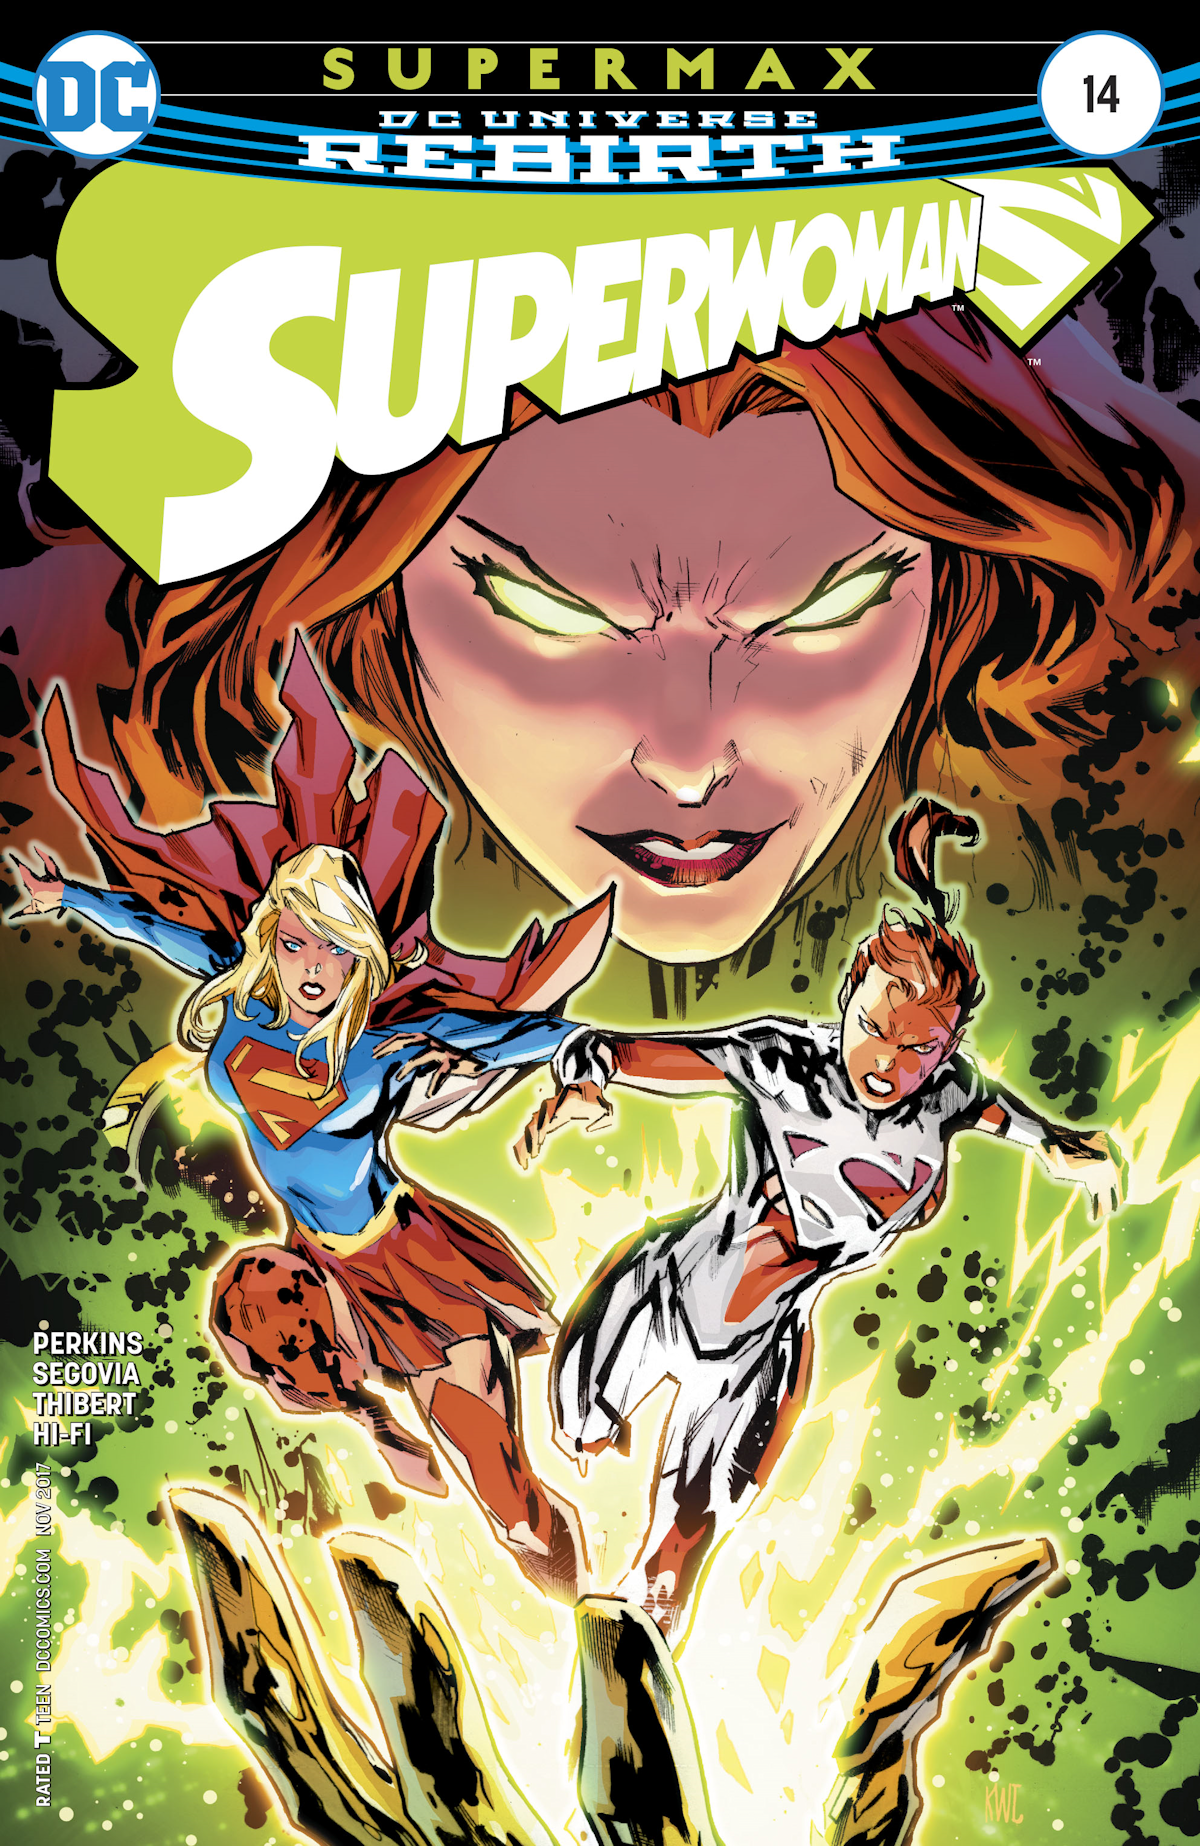 Superwoman 14 (Cover A)